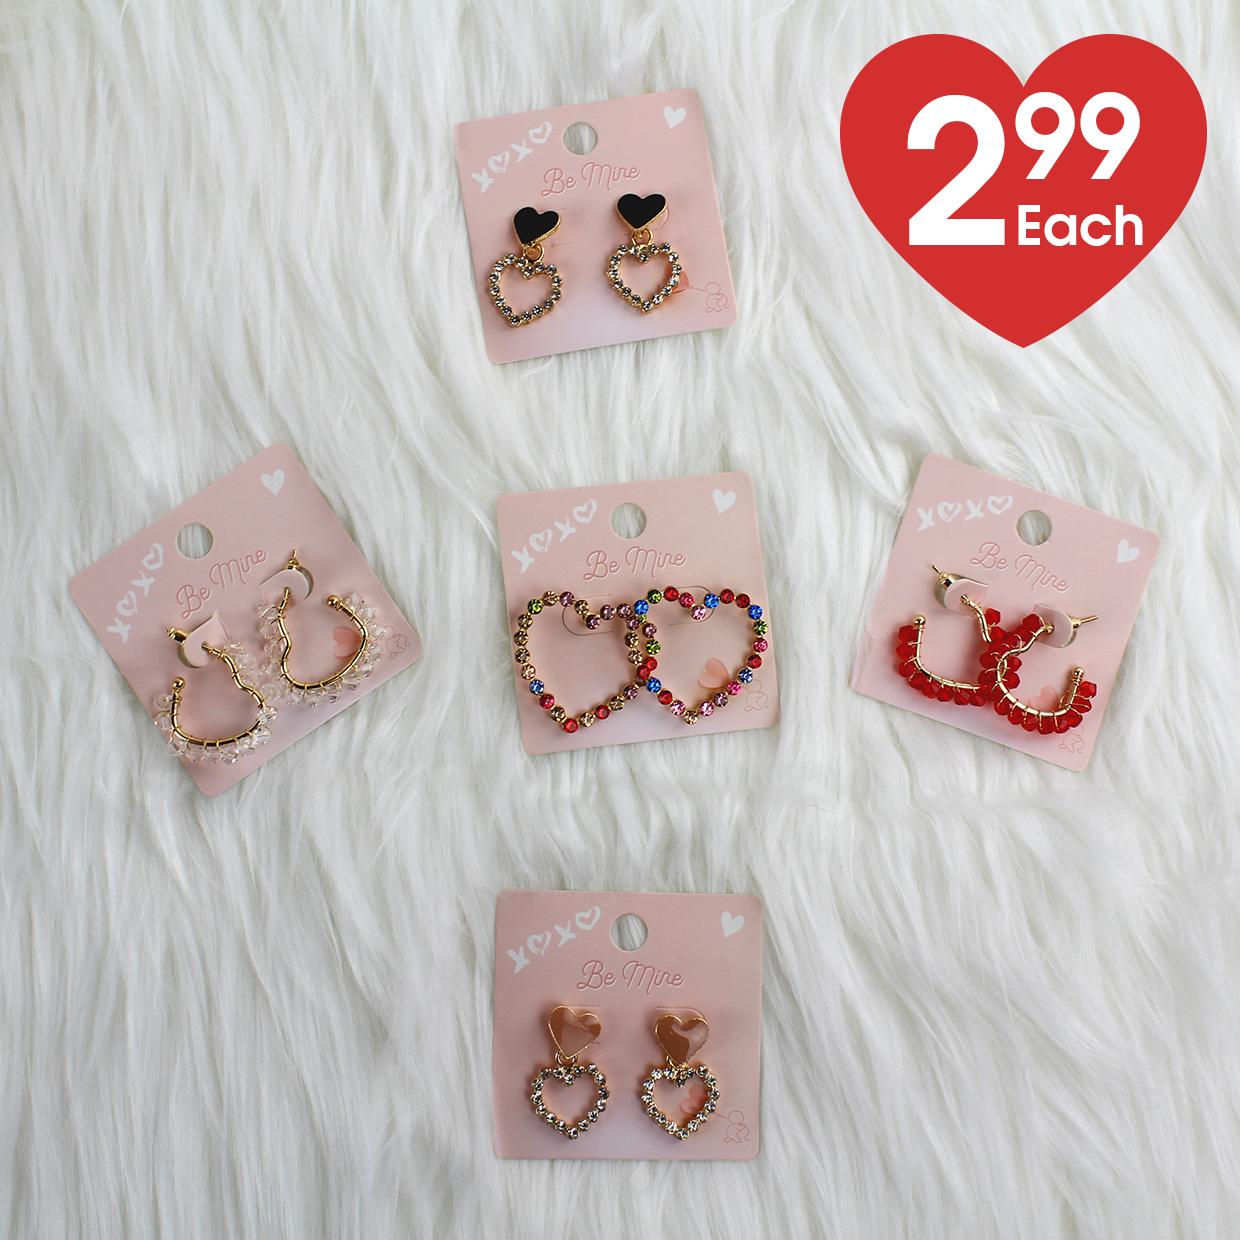 Various Heart shaped earrings for $2.99